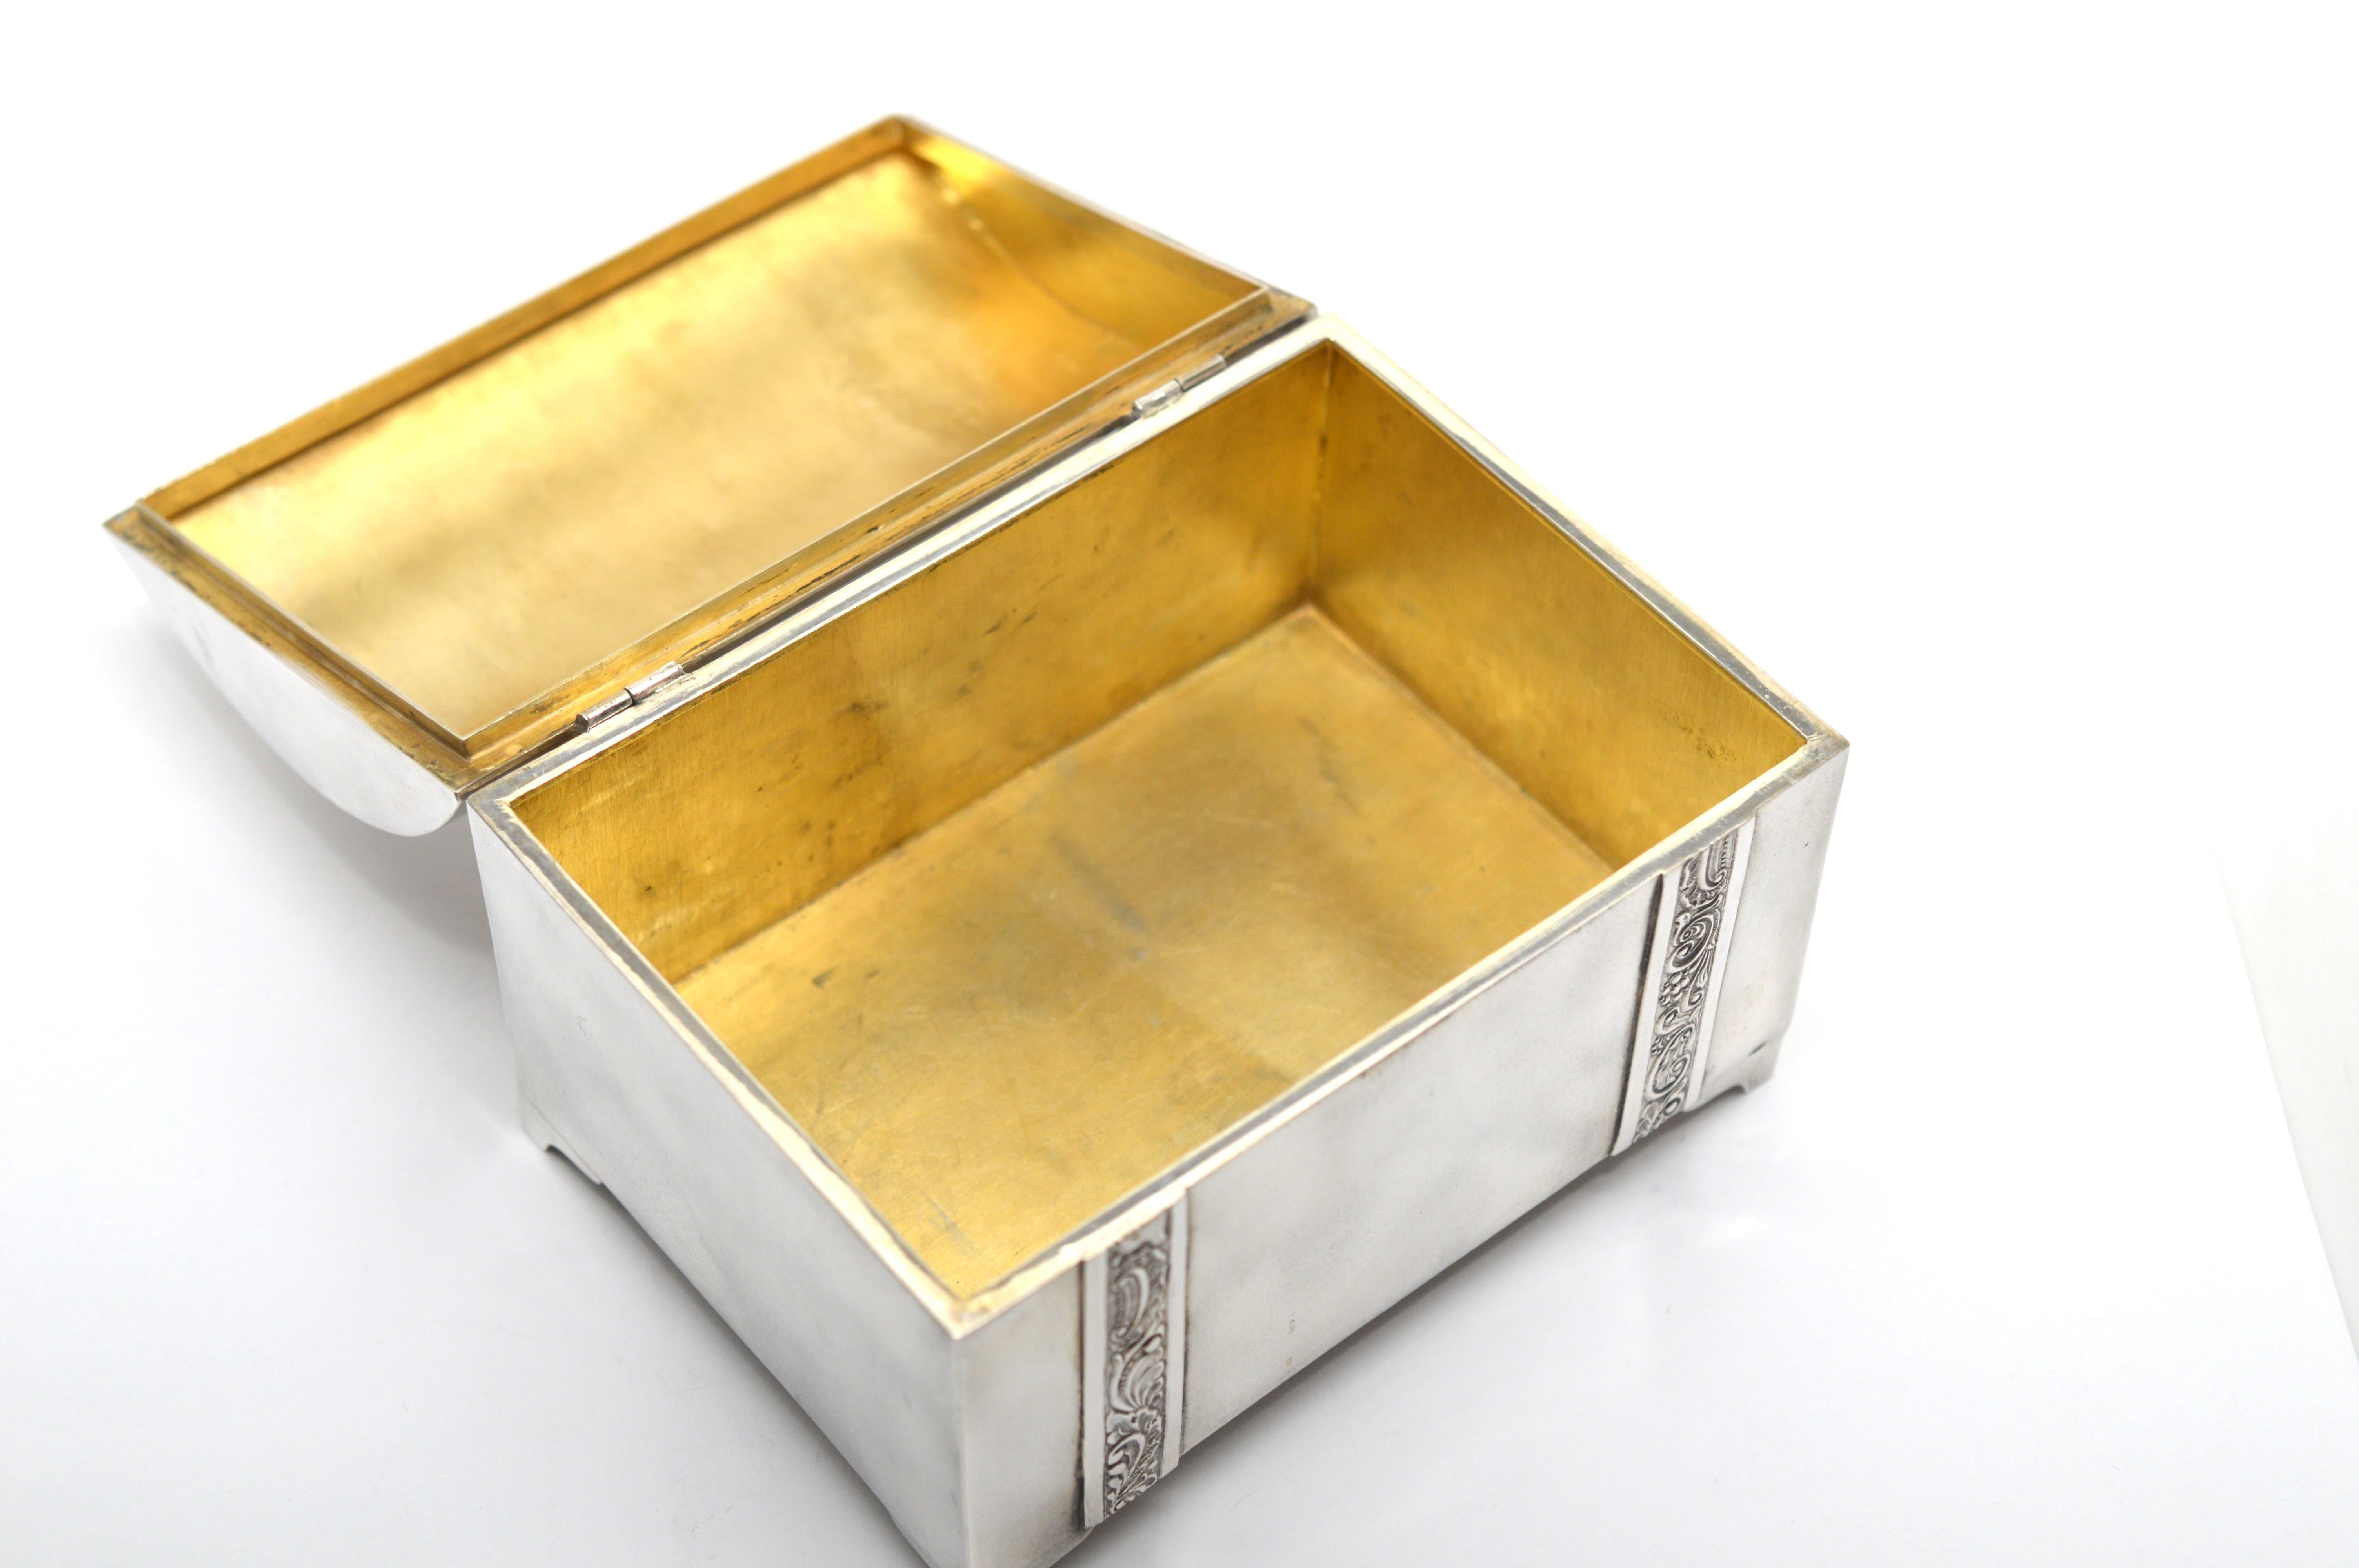 Boîte en argent 875 estonien d'avant-guerre, faite à la main, avec intérieur doré. Le coffre de table, avec son plateau profilé, mesure environ 1,5 m de haut.  4-3/4 pouces de long par 3-3/8 pouces de large x 2-3/4 de haut. Une belle pièce de